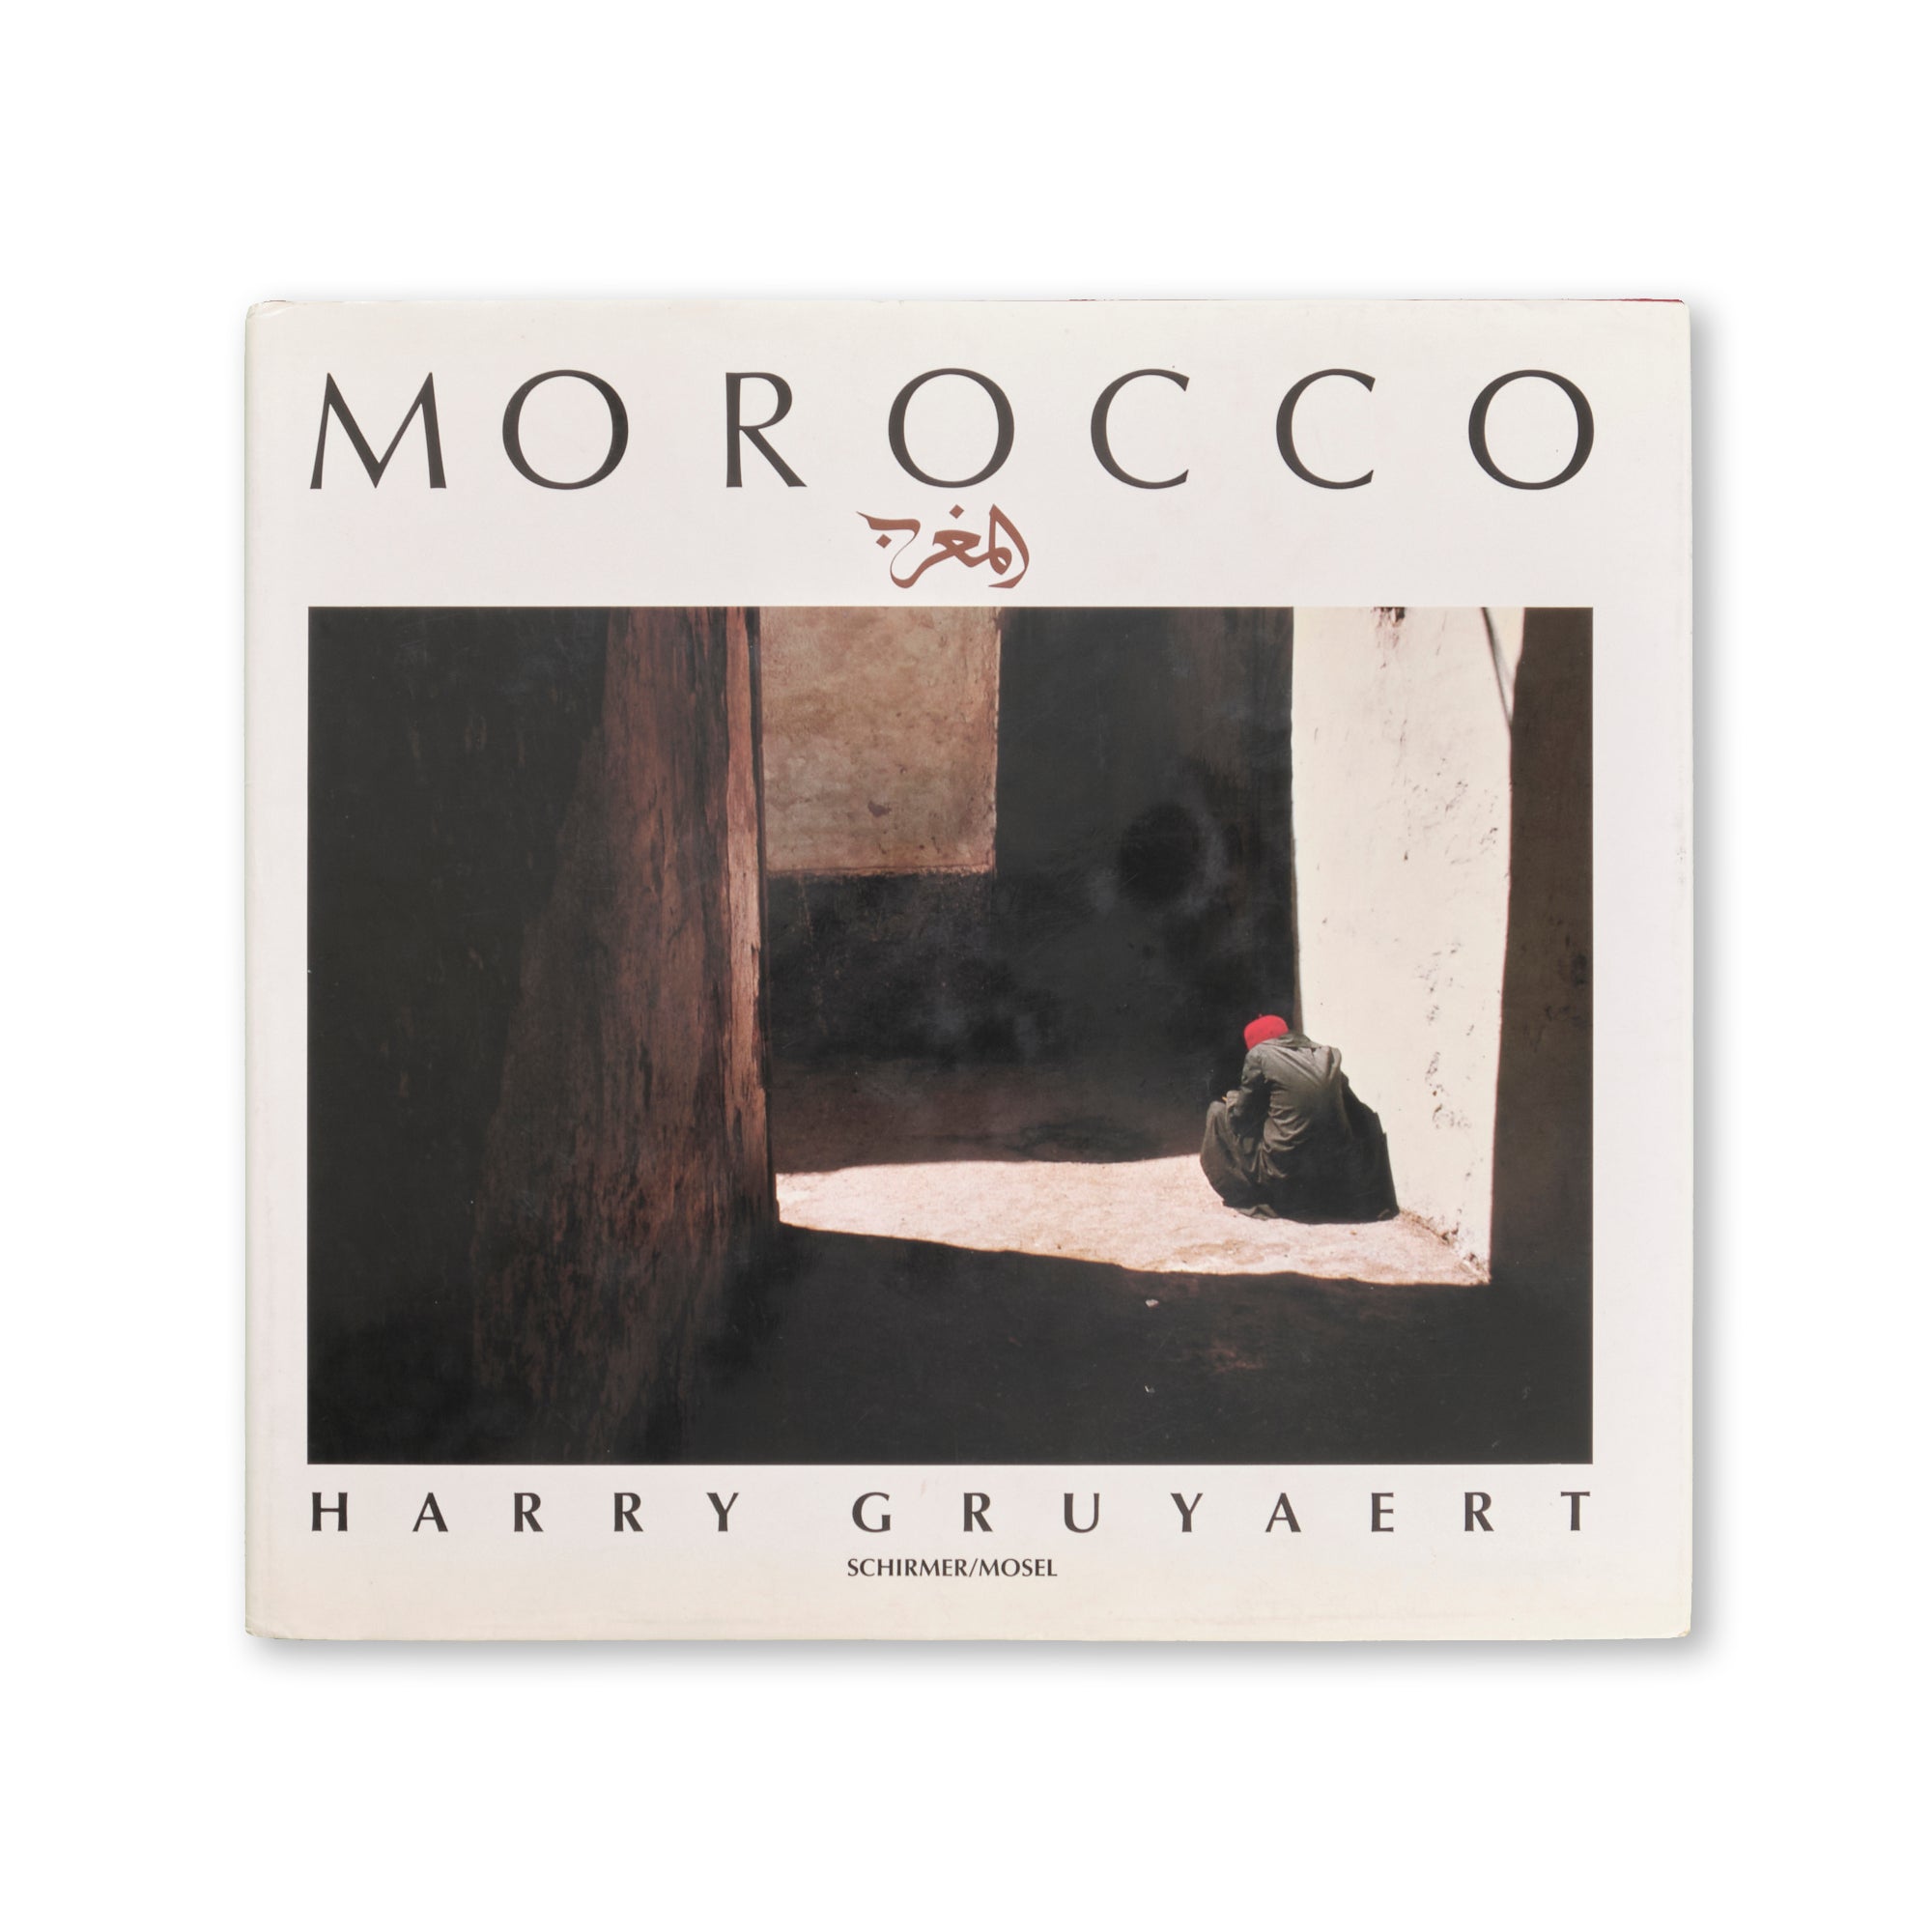 Harry Gruyaert - Morocco